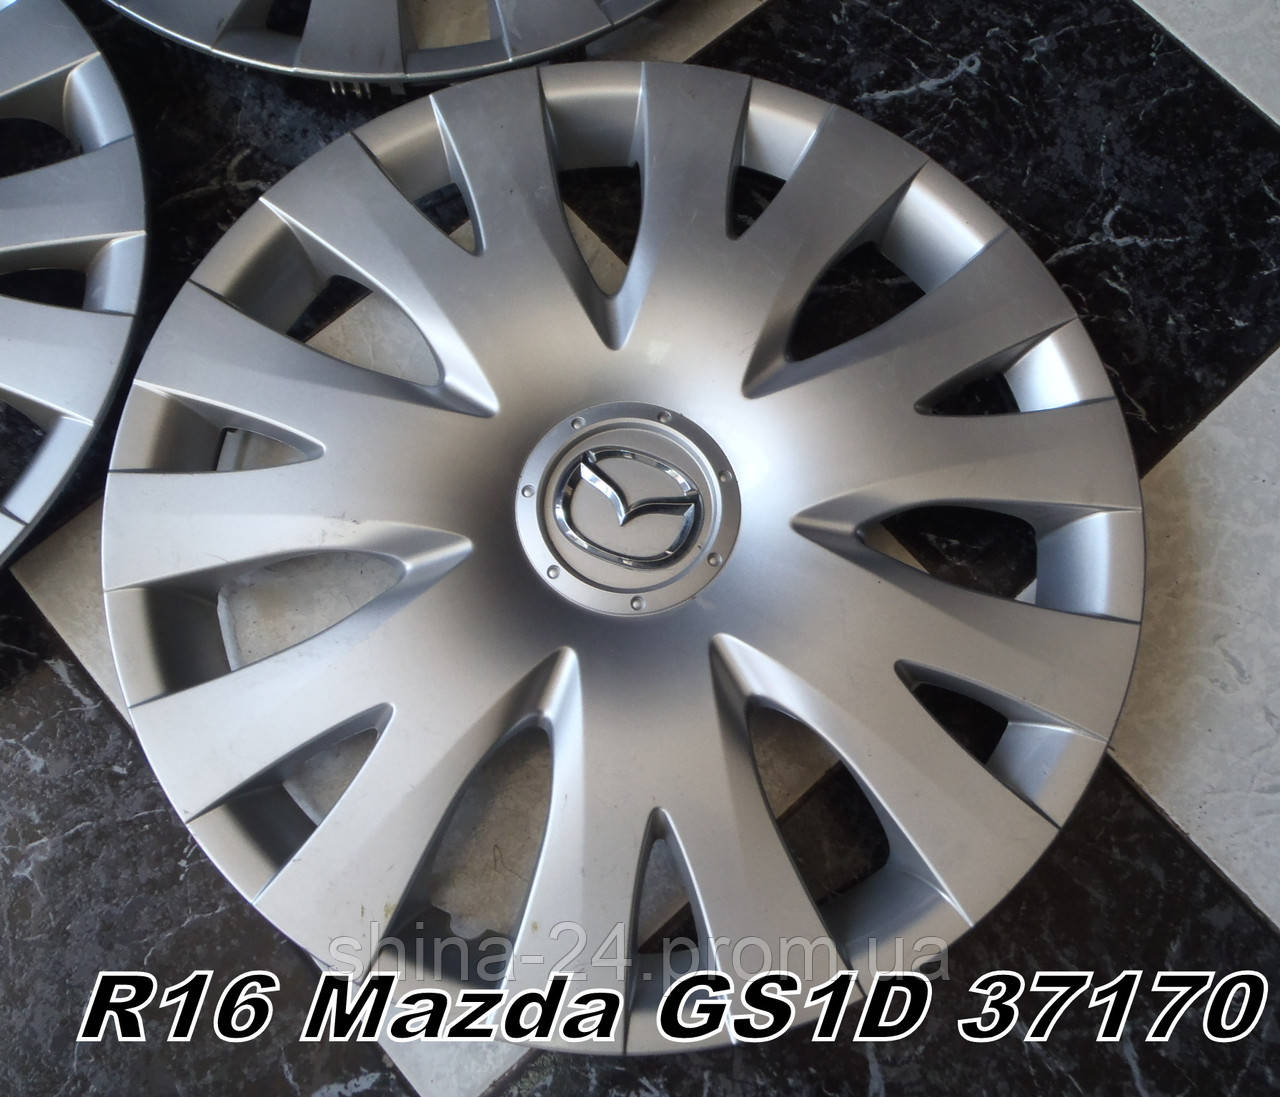 Оригинальные Колпаки R16 Mazda GS1D 37170